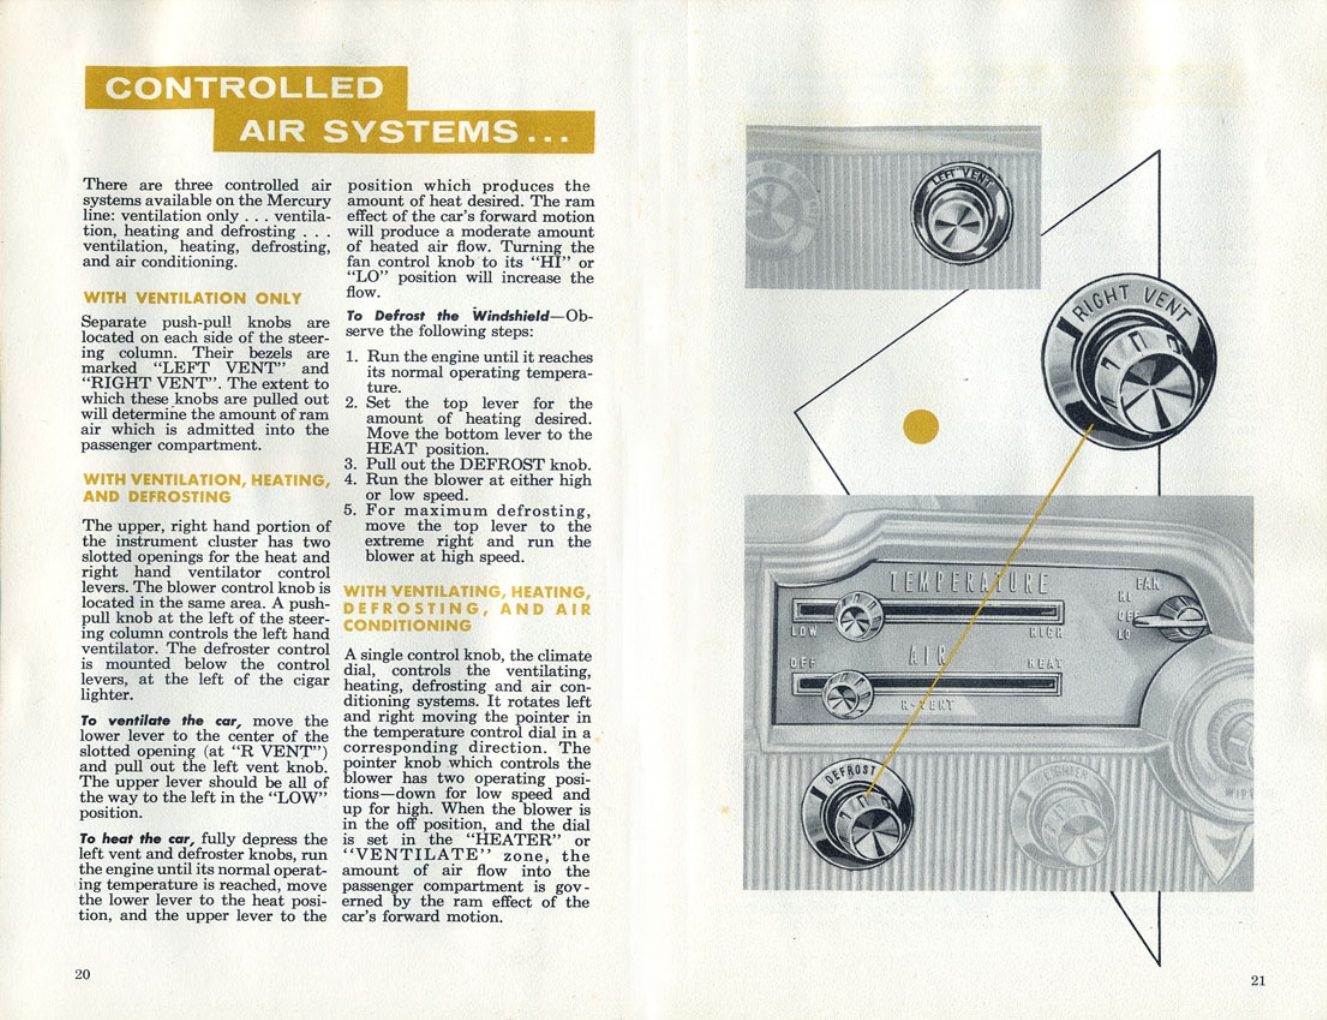 n_1960 Mercury Manual-20-21.jpg